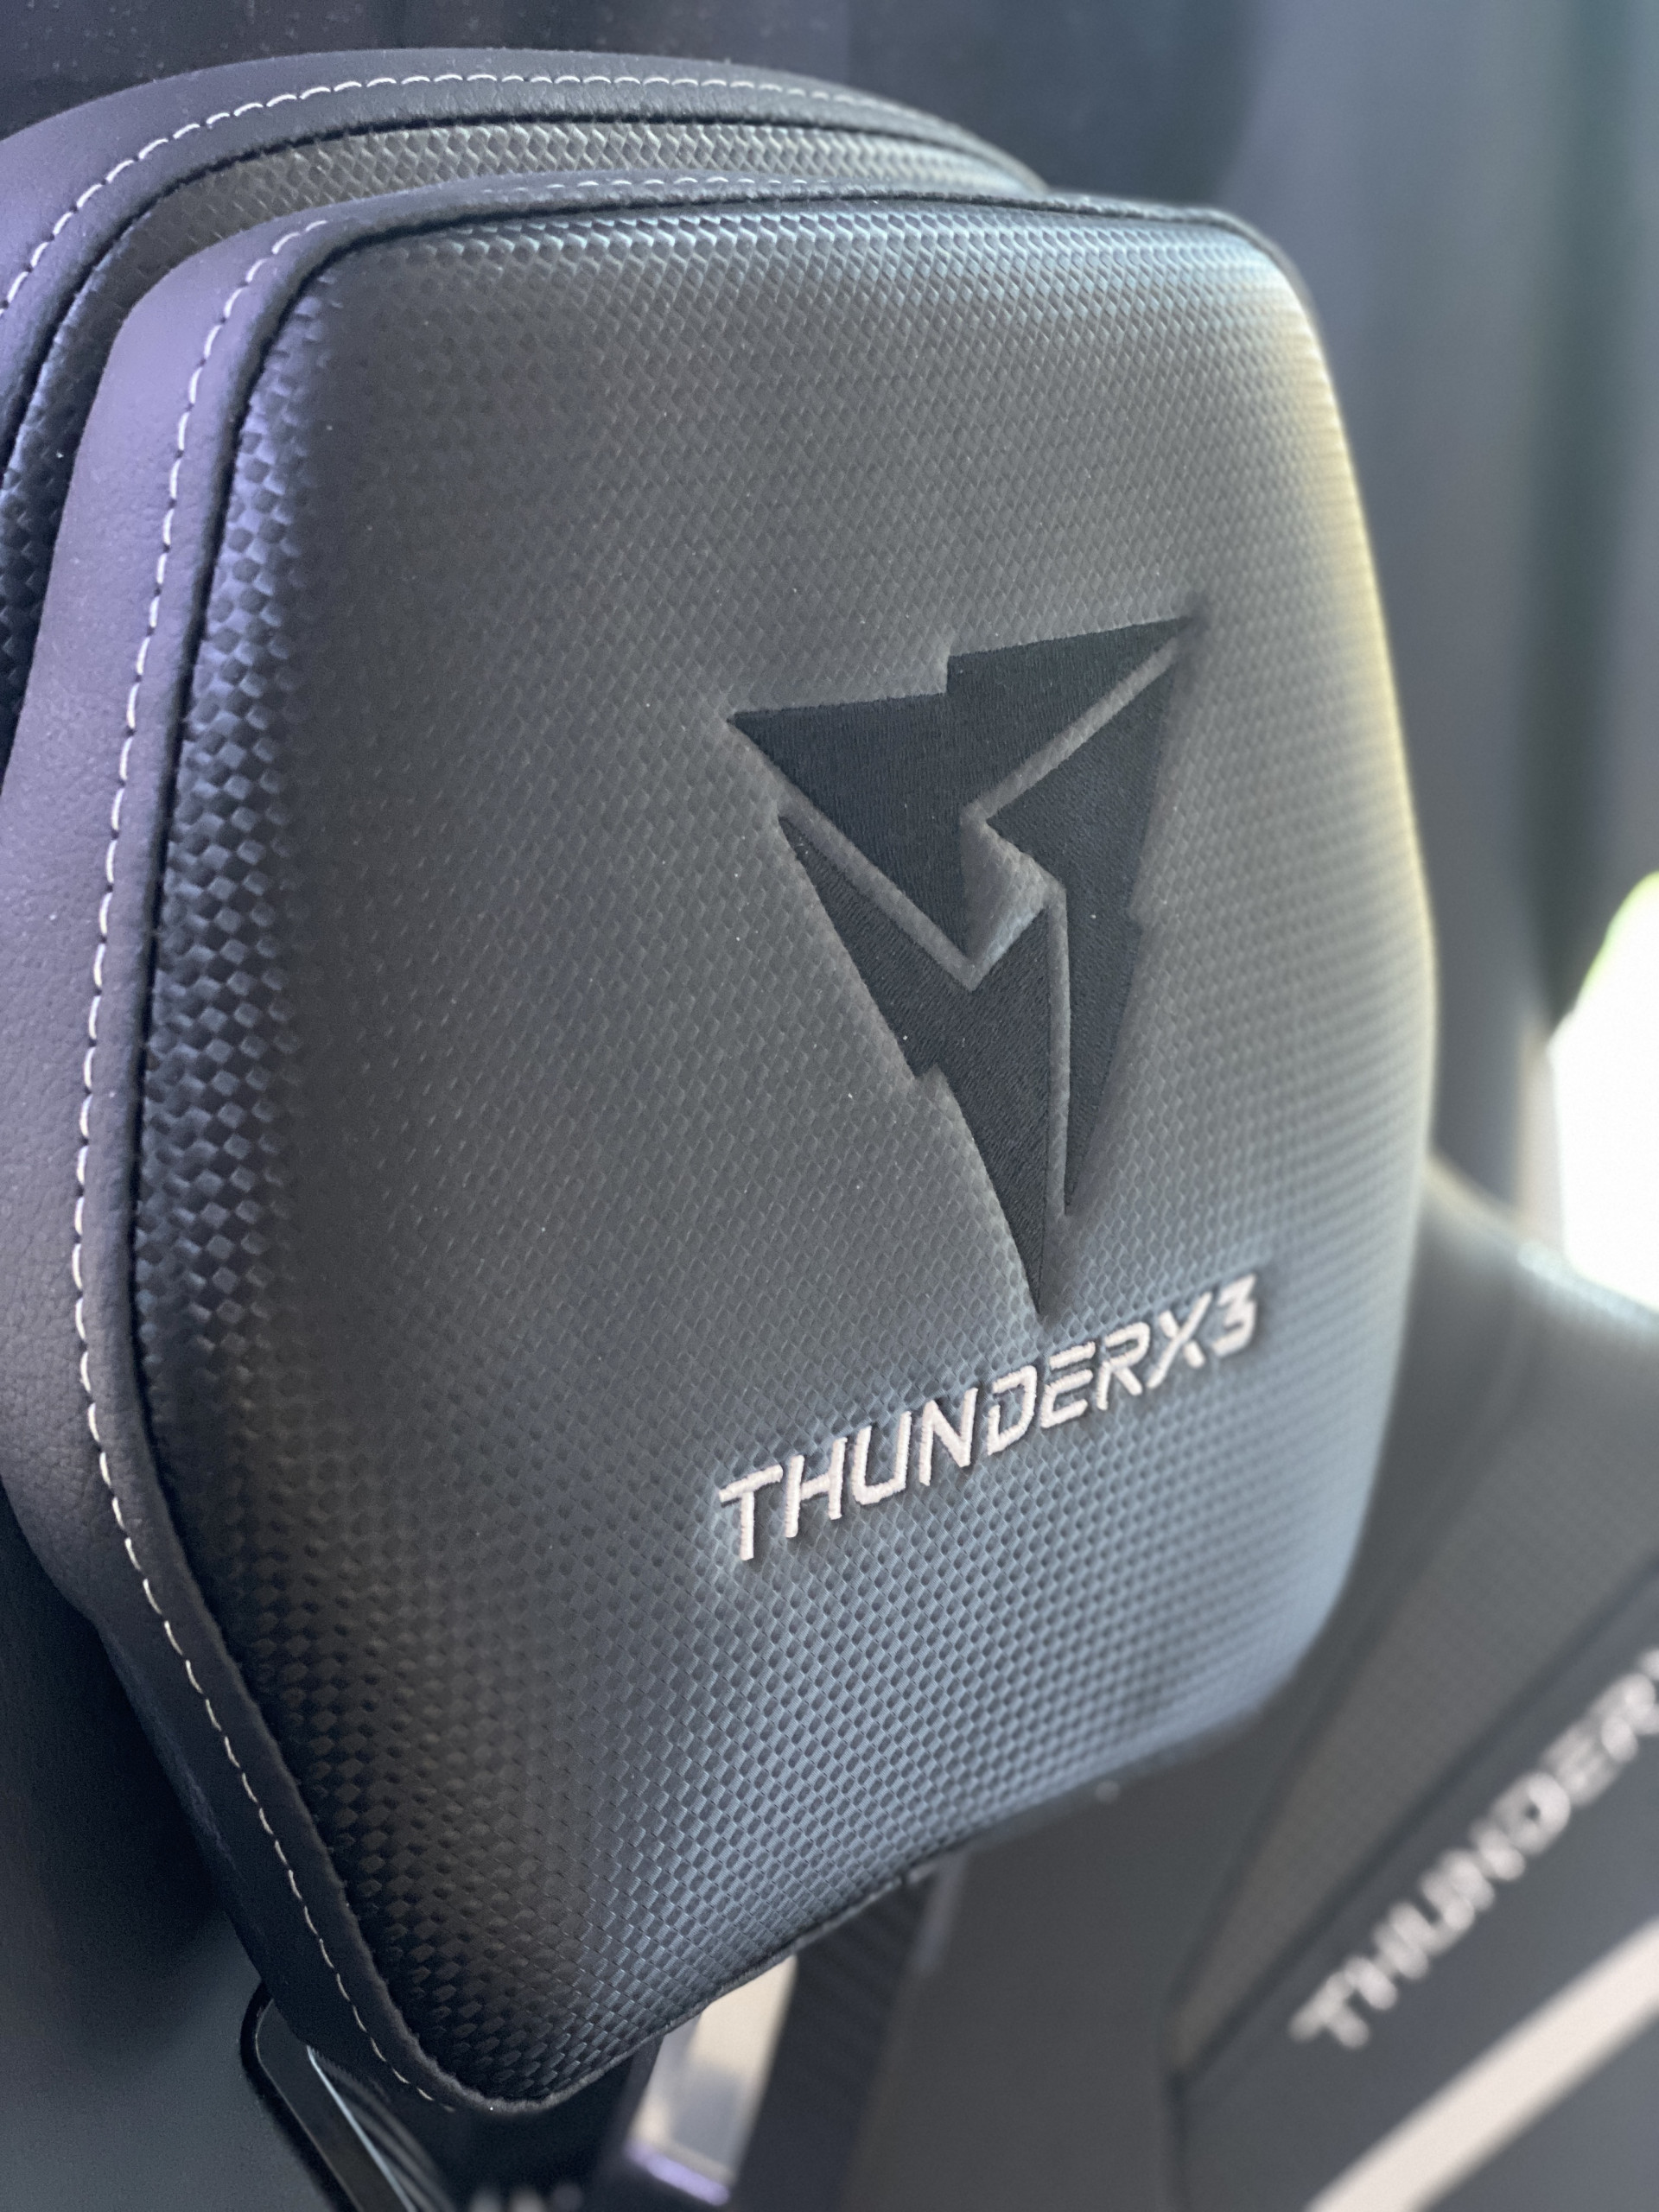 ThunderX3 headrest